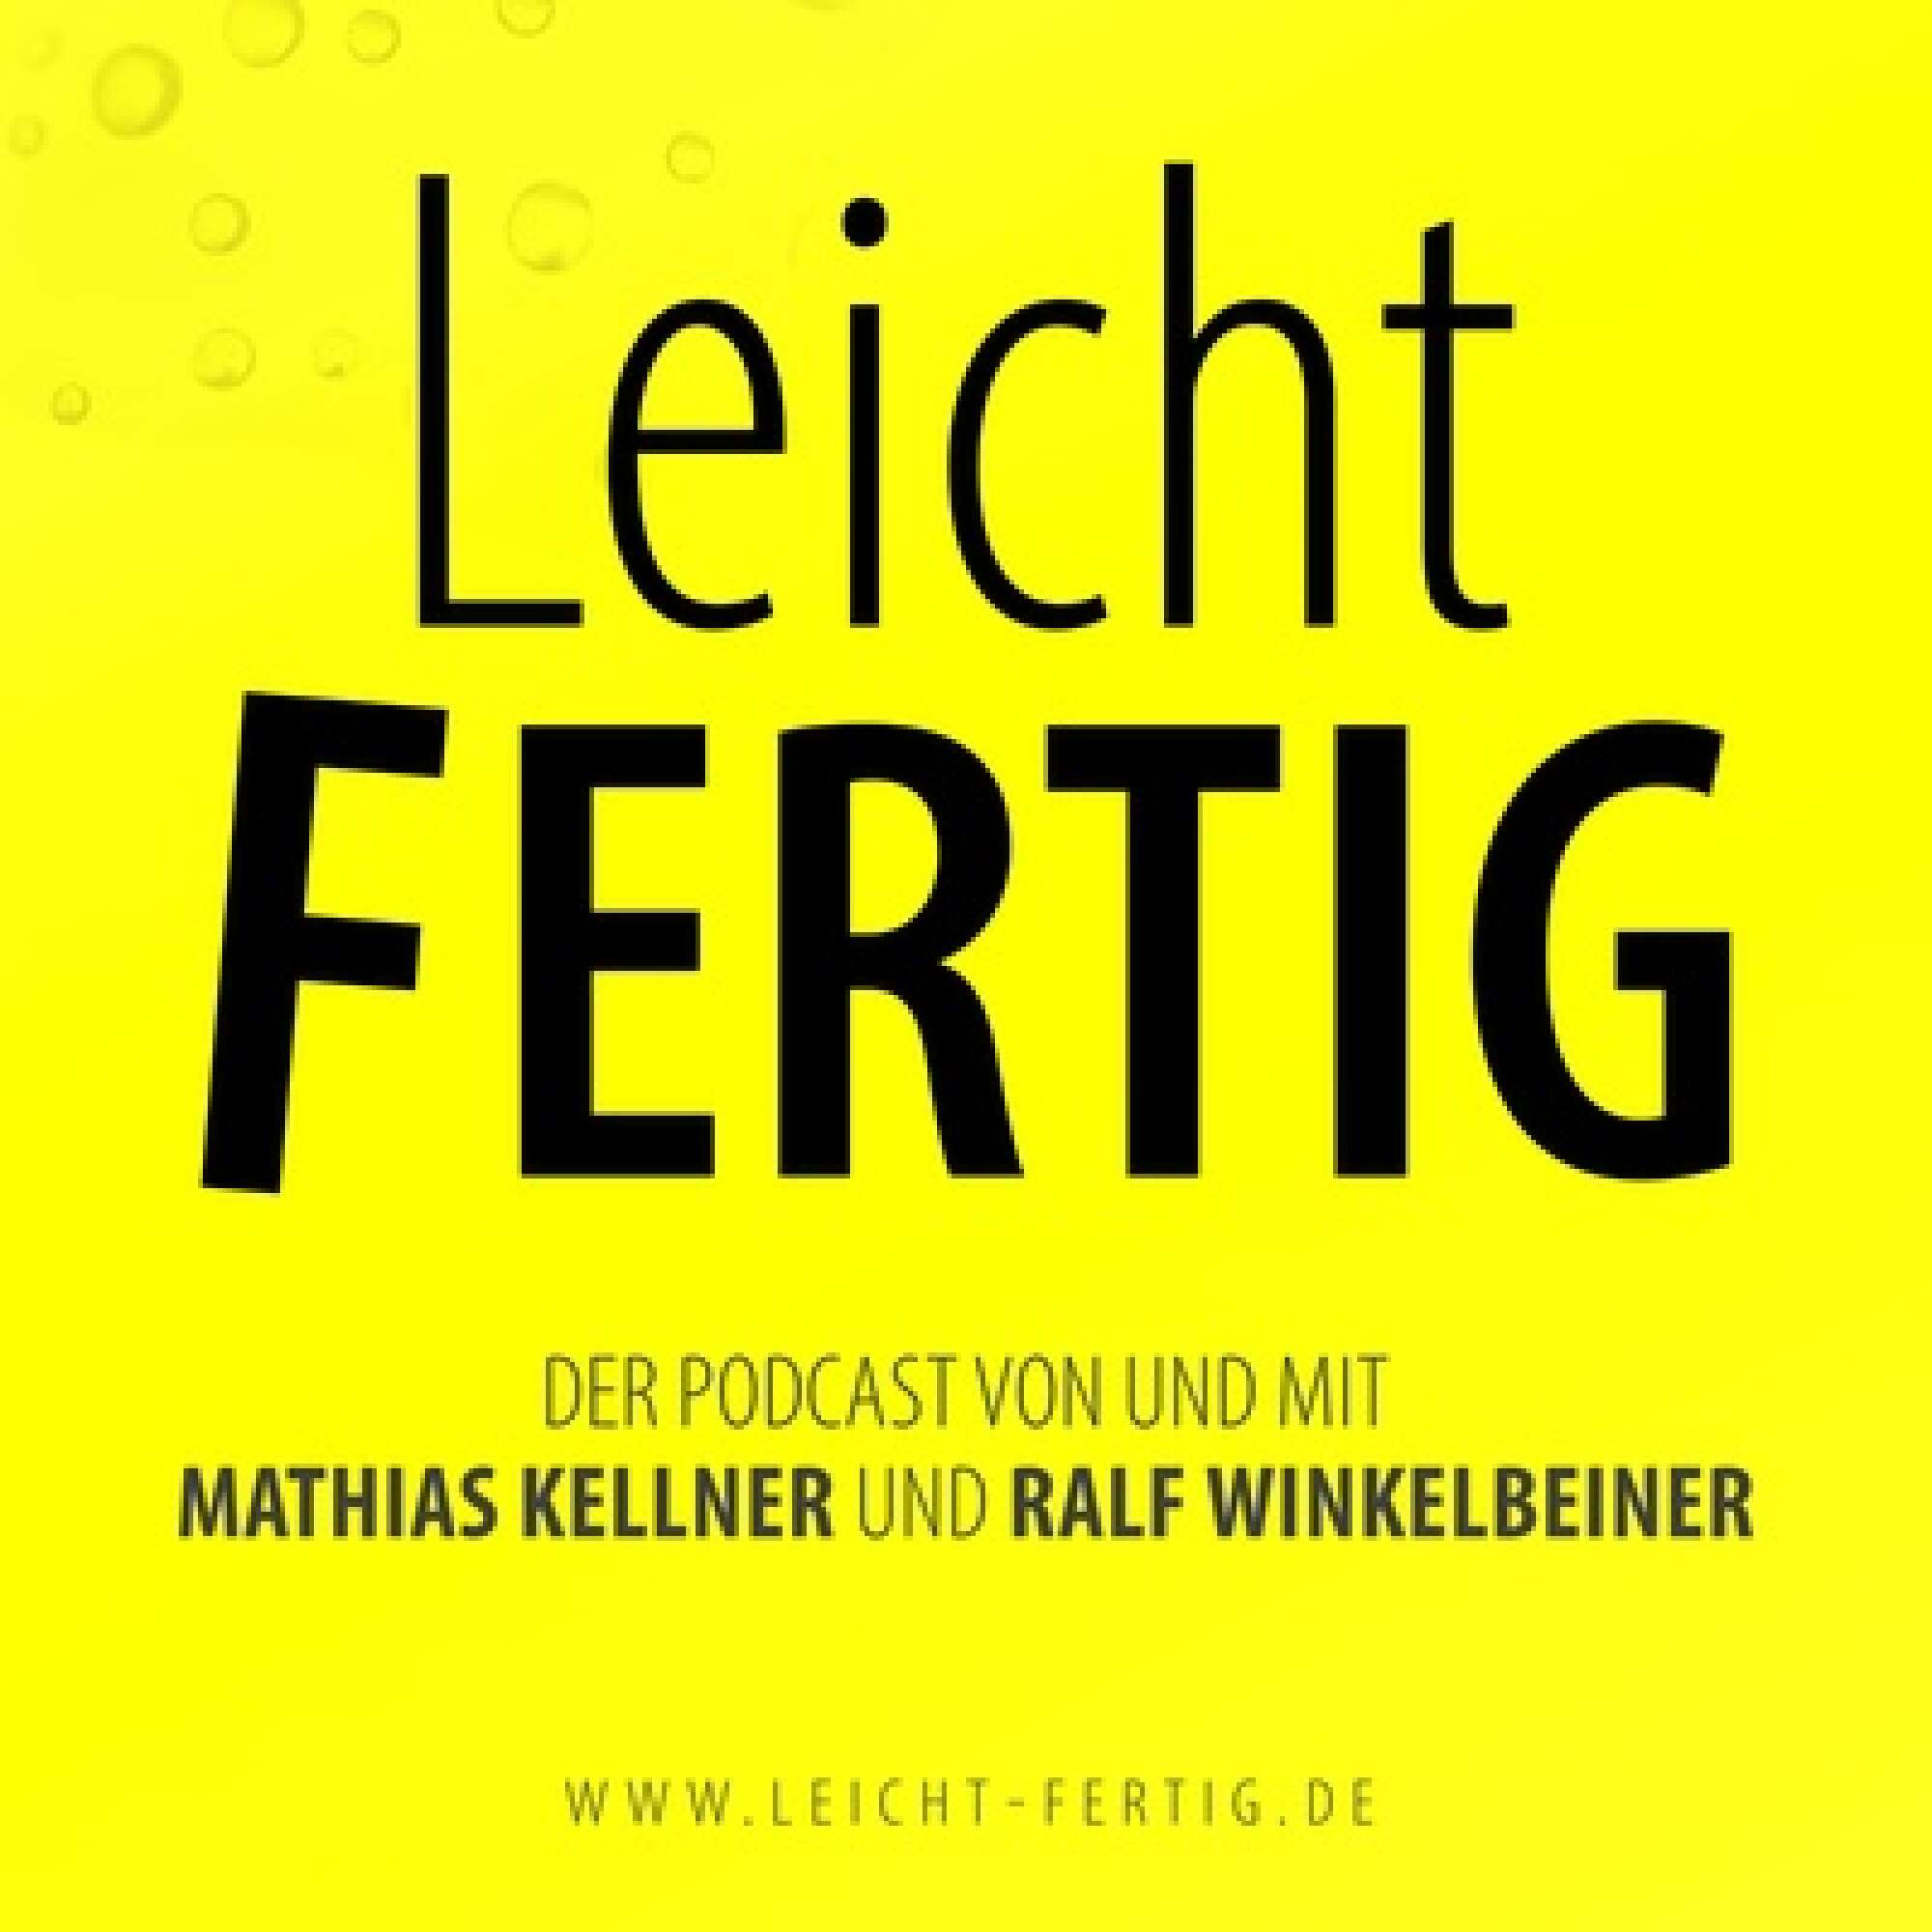 Podcast-Cover "leichtFERTIG"